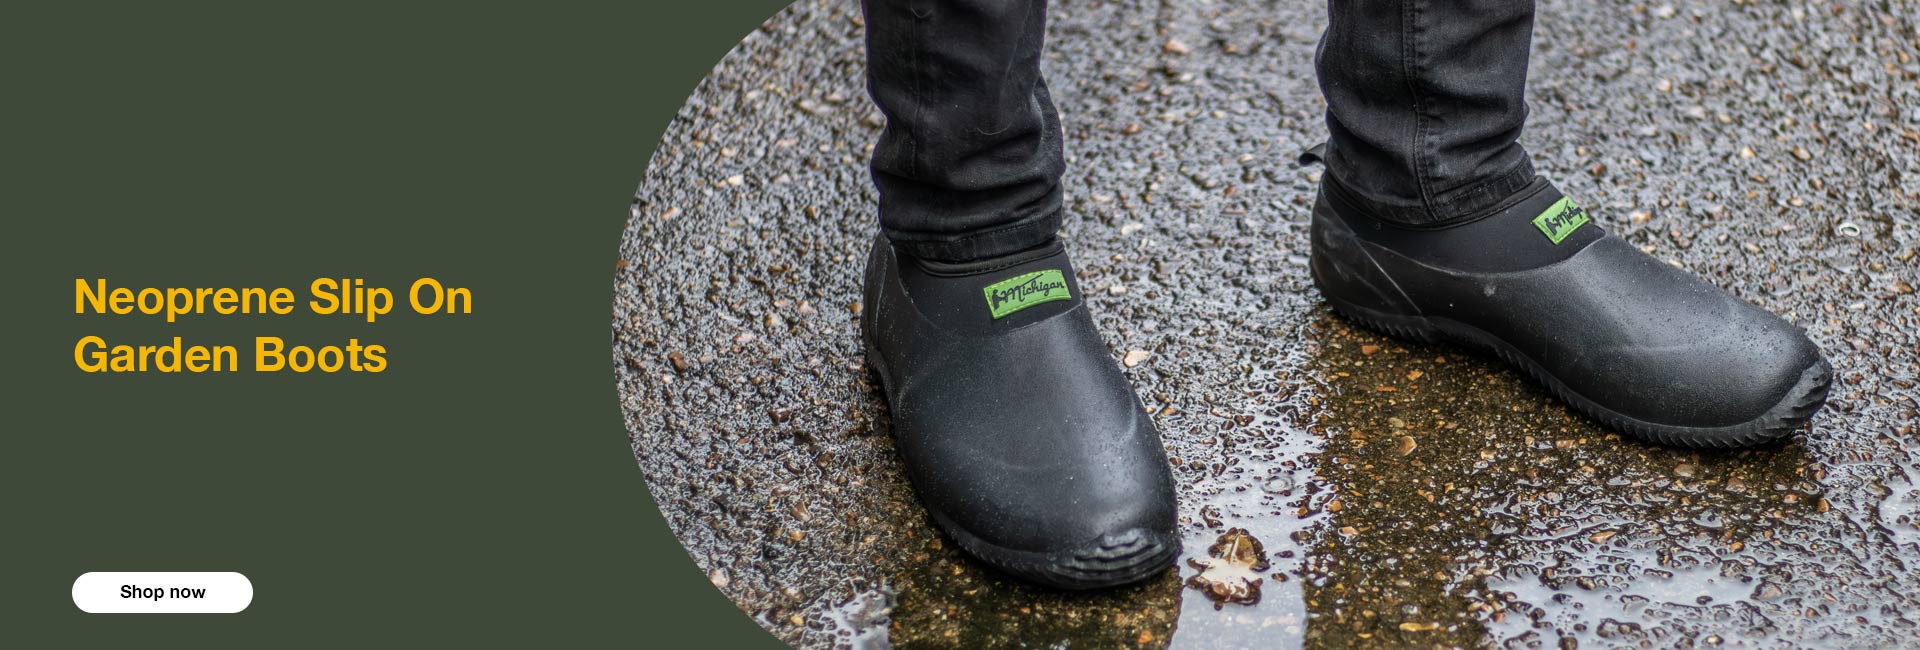 Michigan Black Neoprene Garden Boots Slip On Waterproof Outdoor Shoe